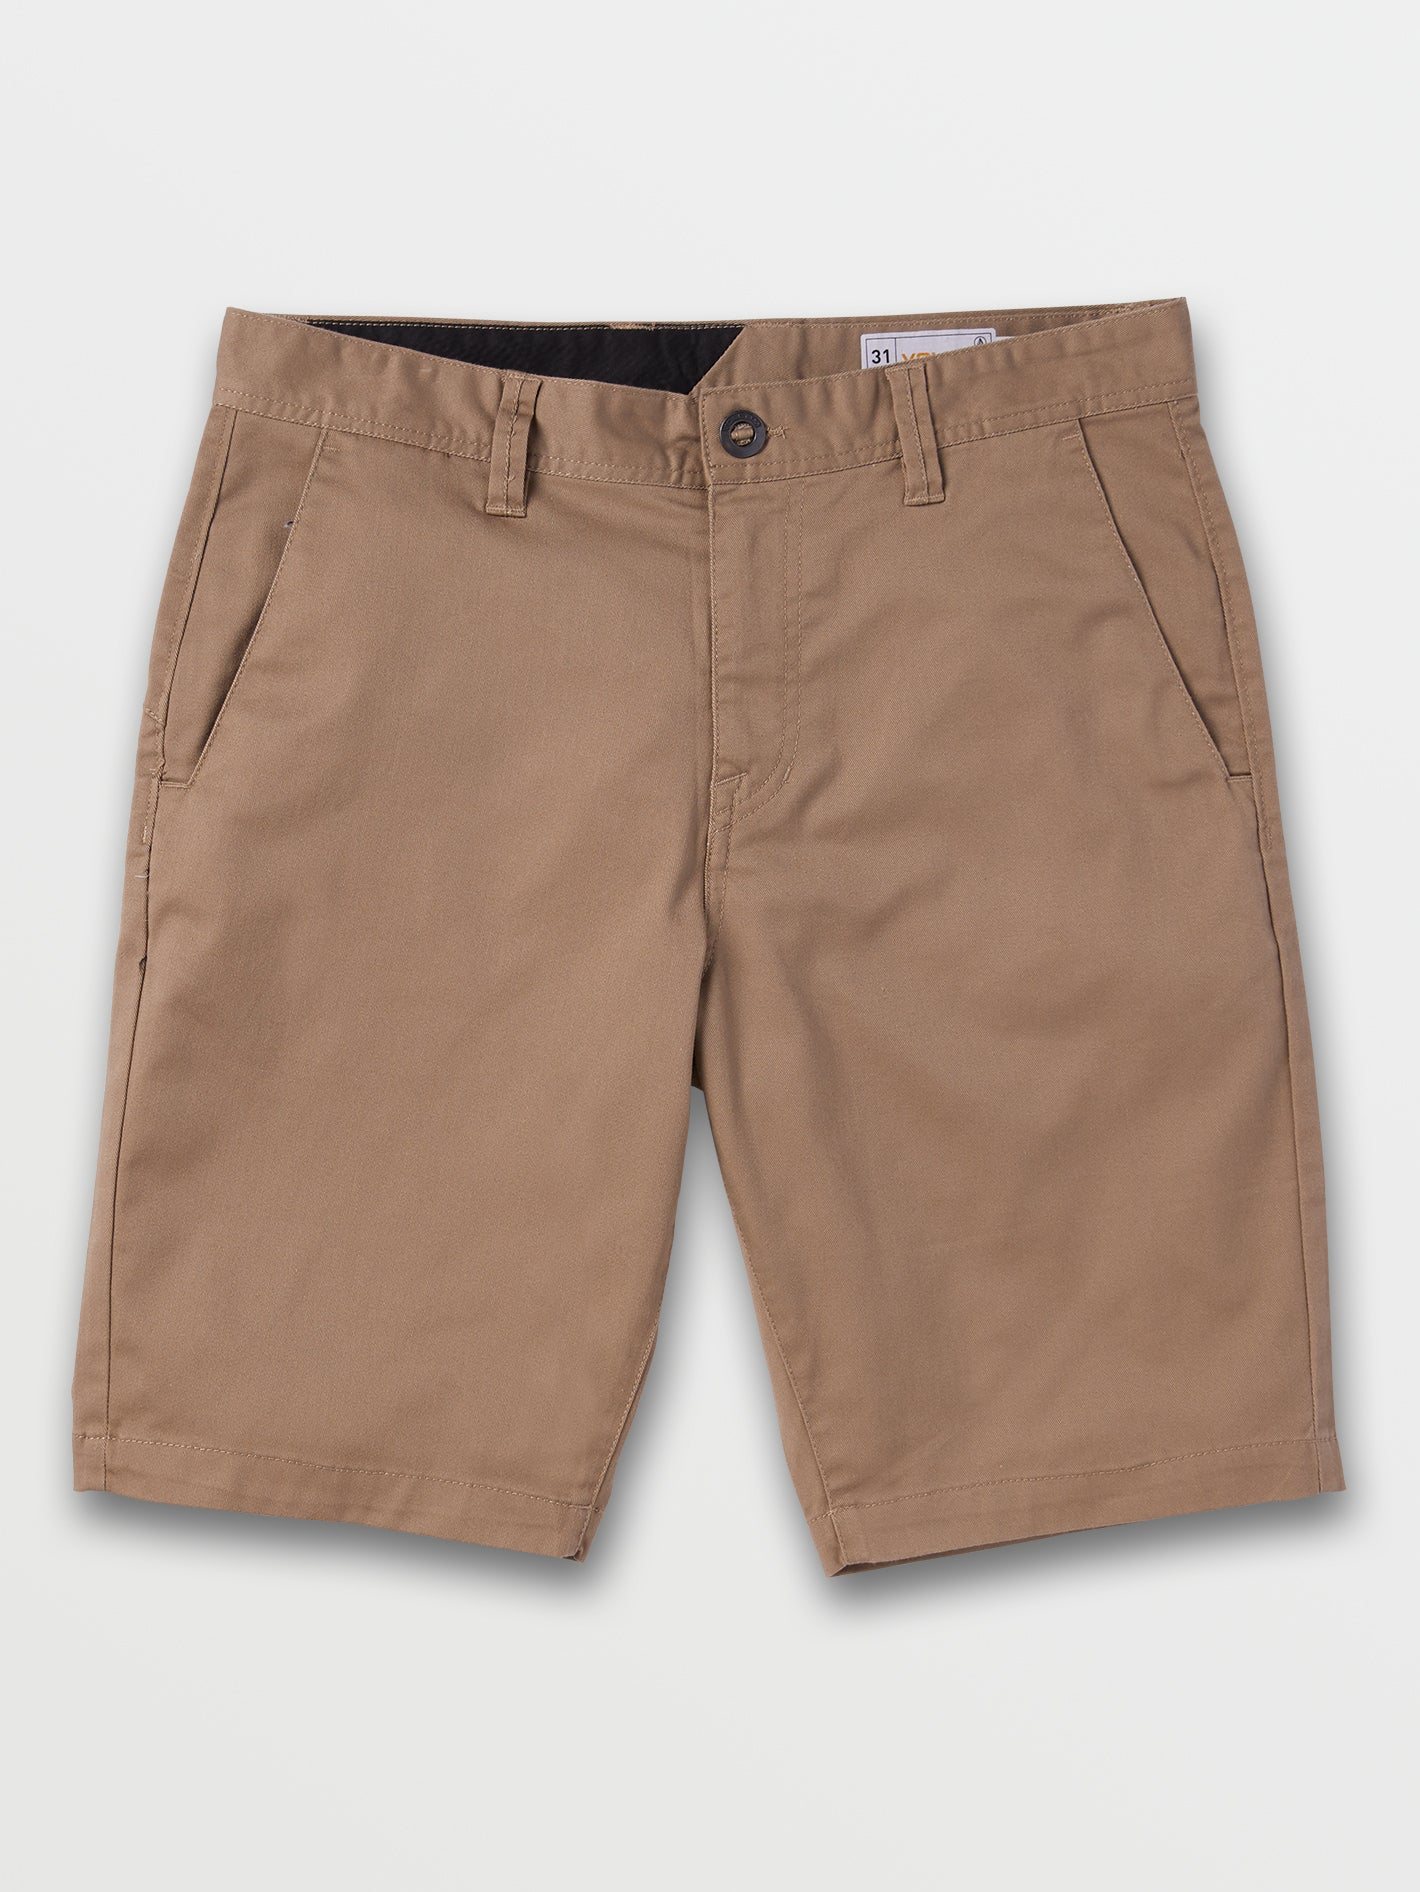 Frickin Mod Stretch Shorts - Men's Khaki Chino Shorts | Volcom – Volcom US